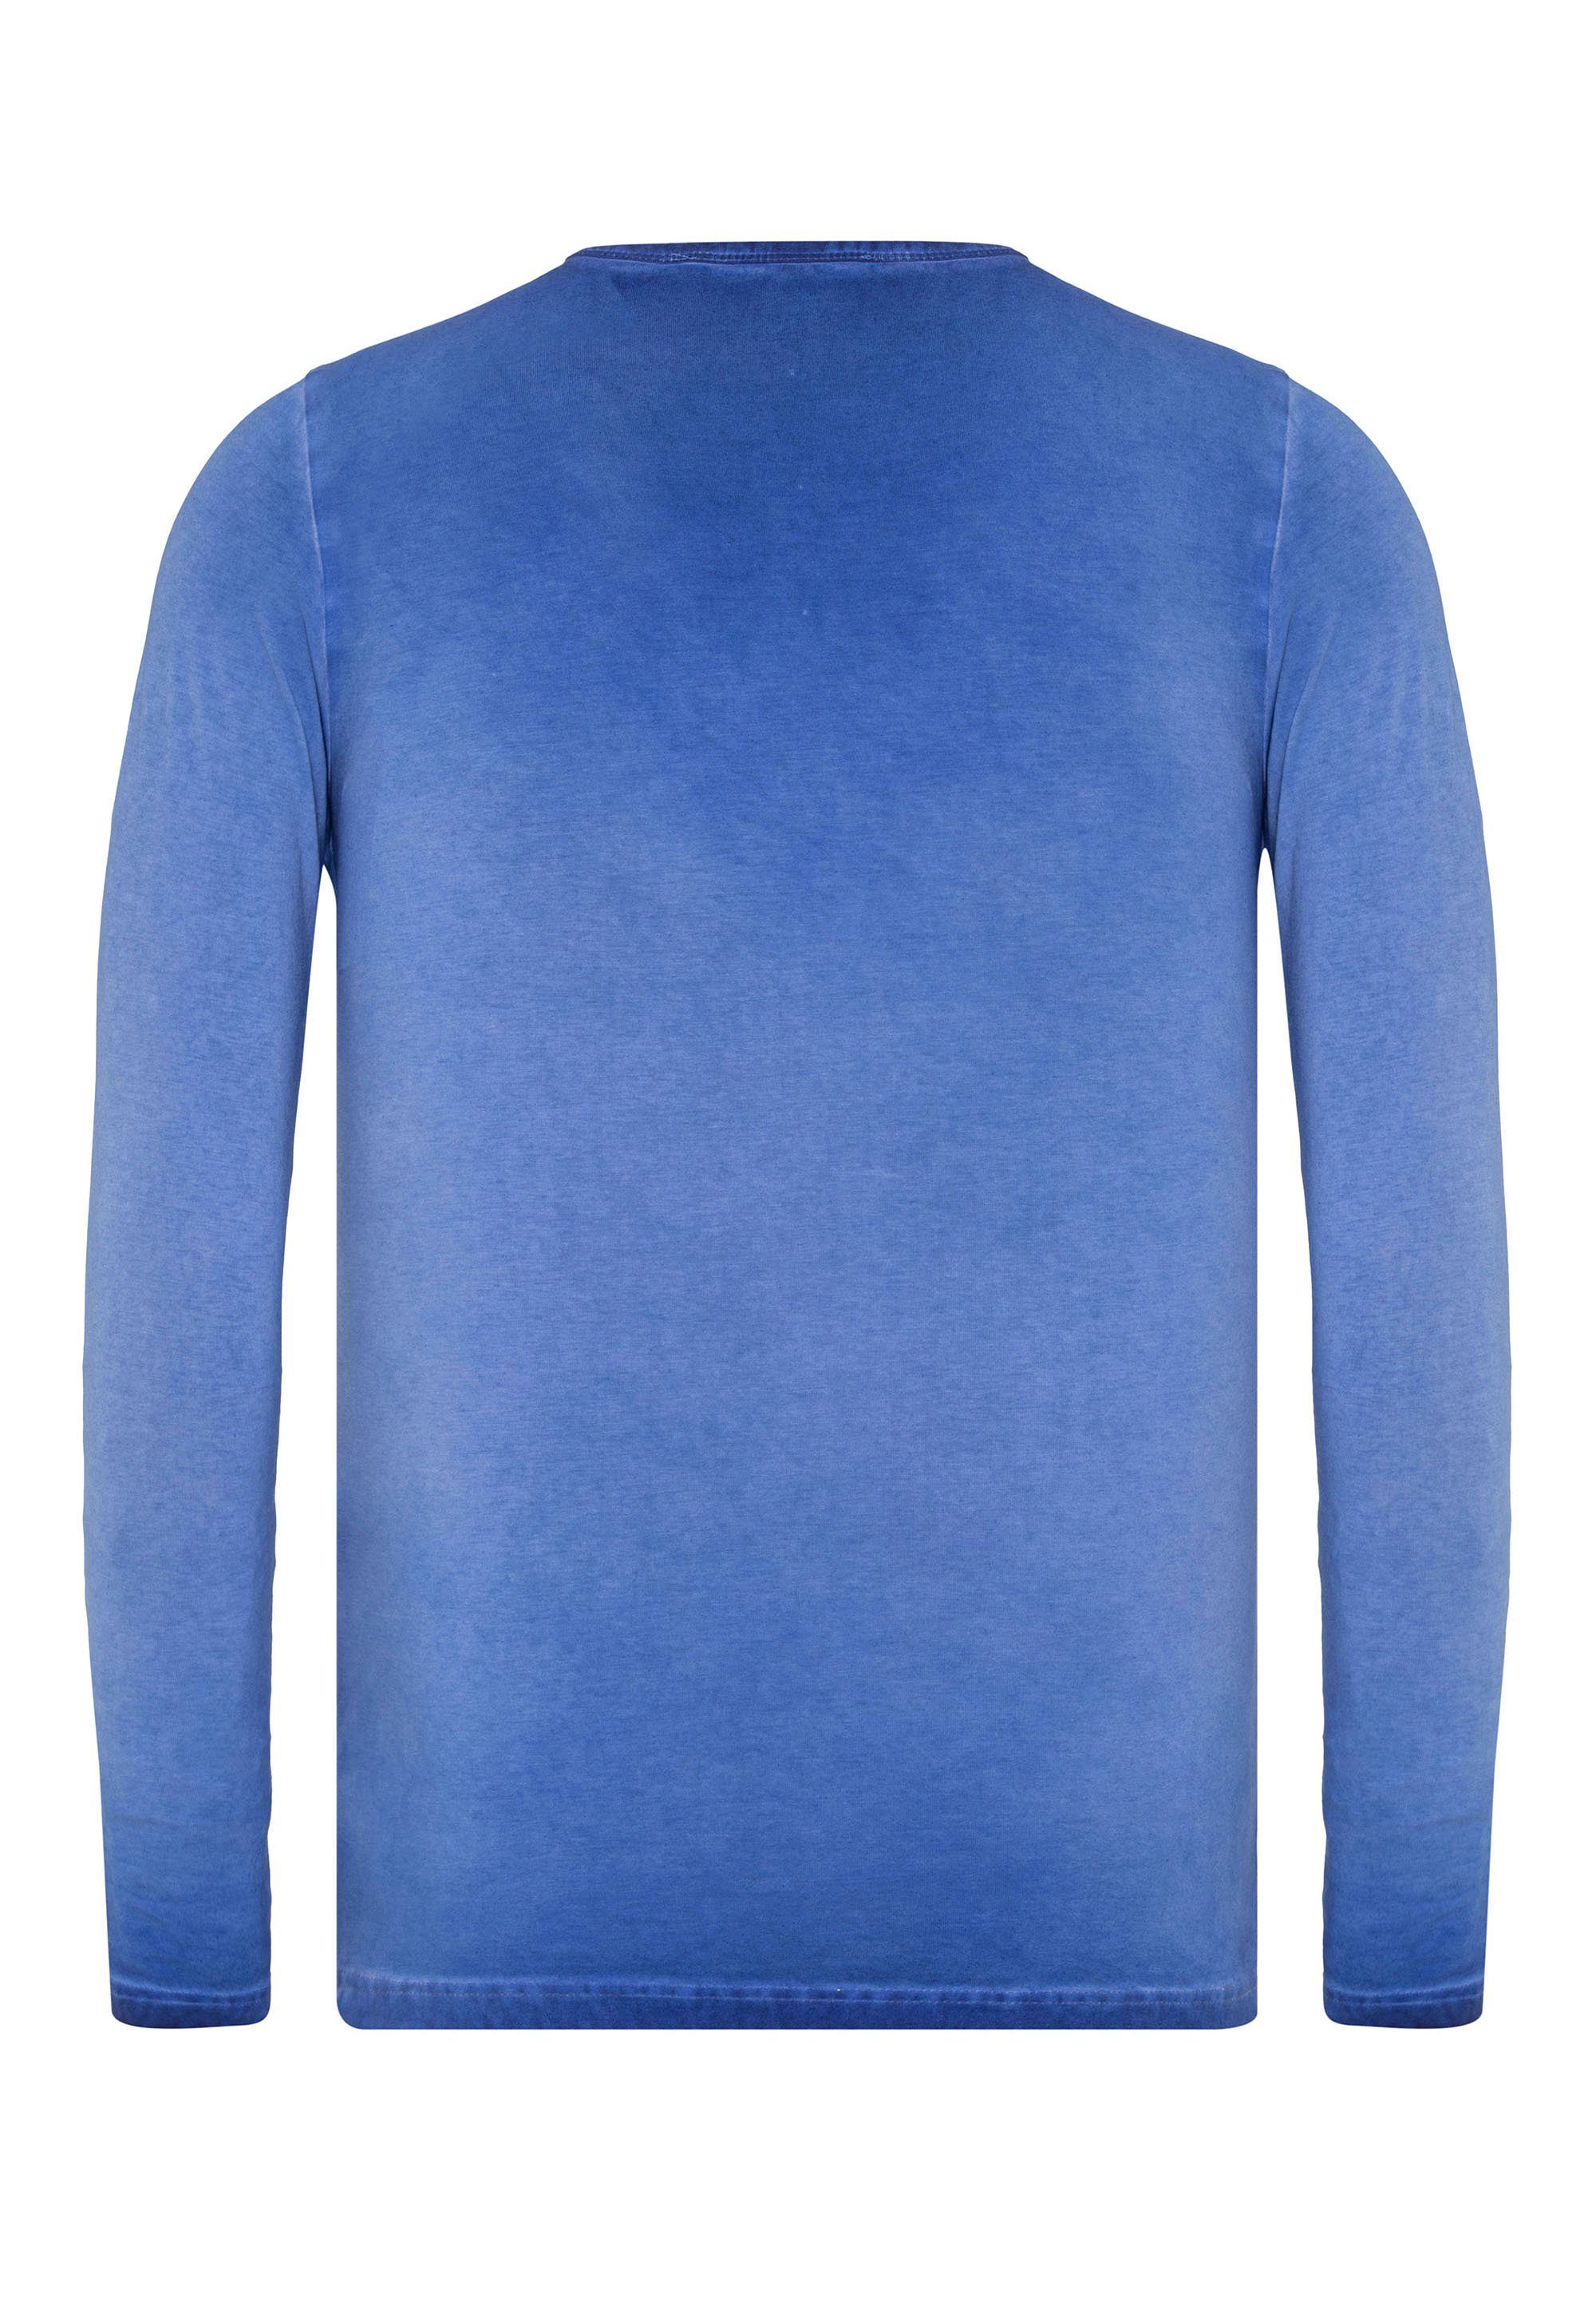 Cipo & Baxx Langarmshirt mit blau stylischen Prints